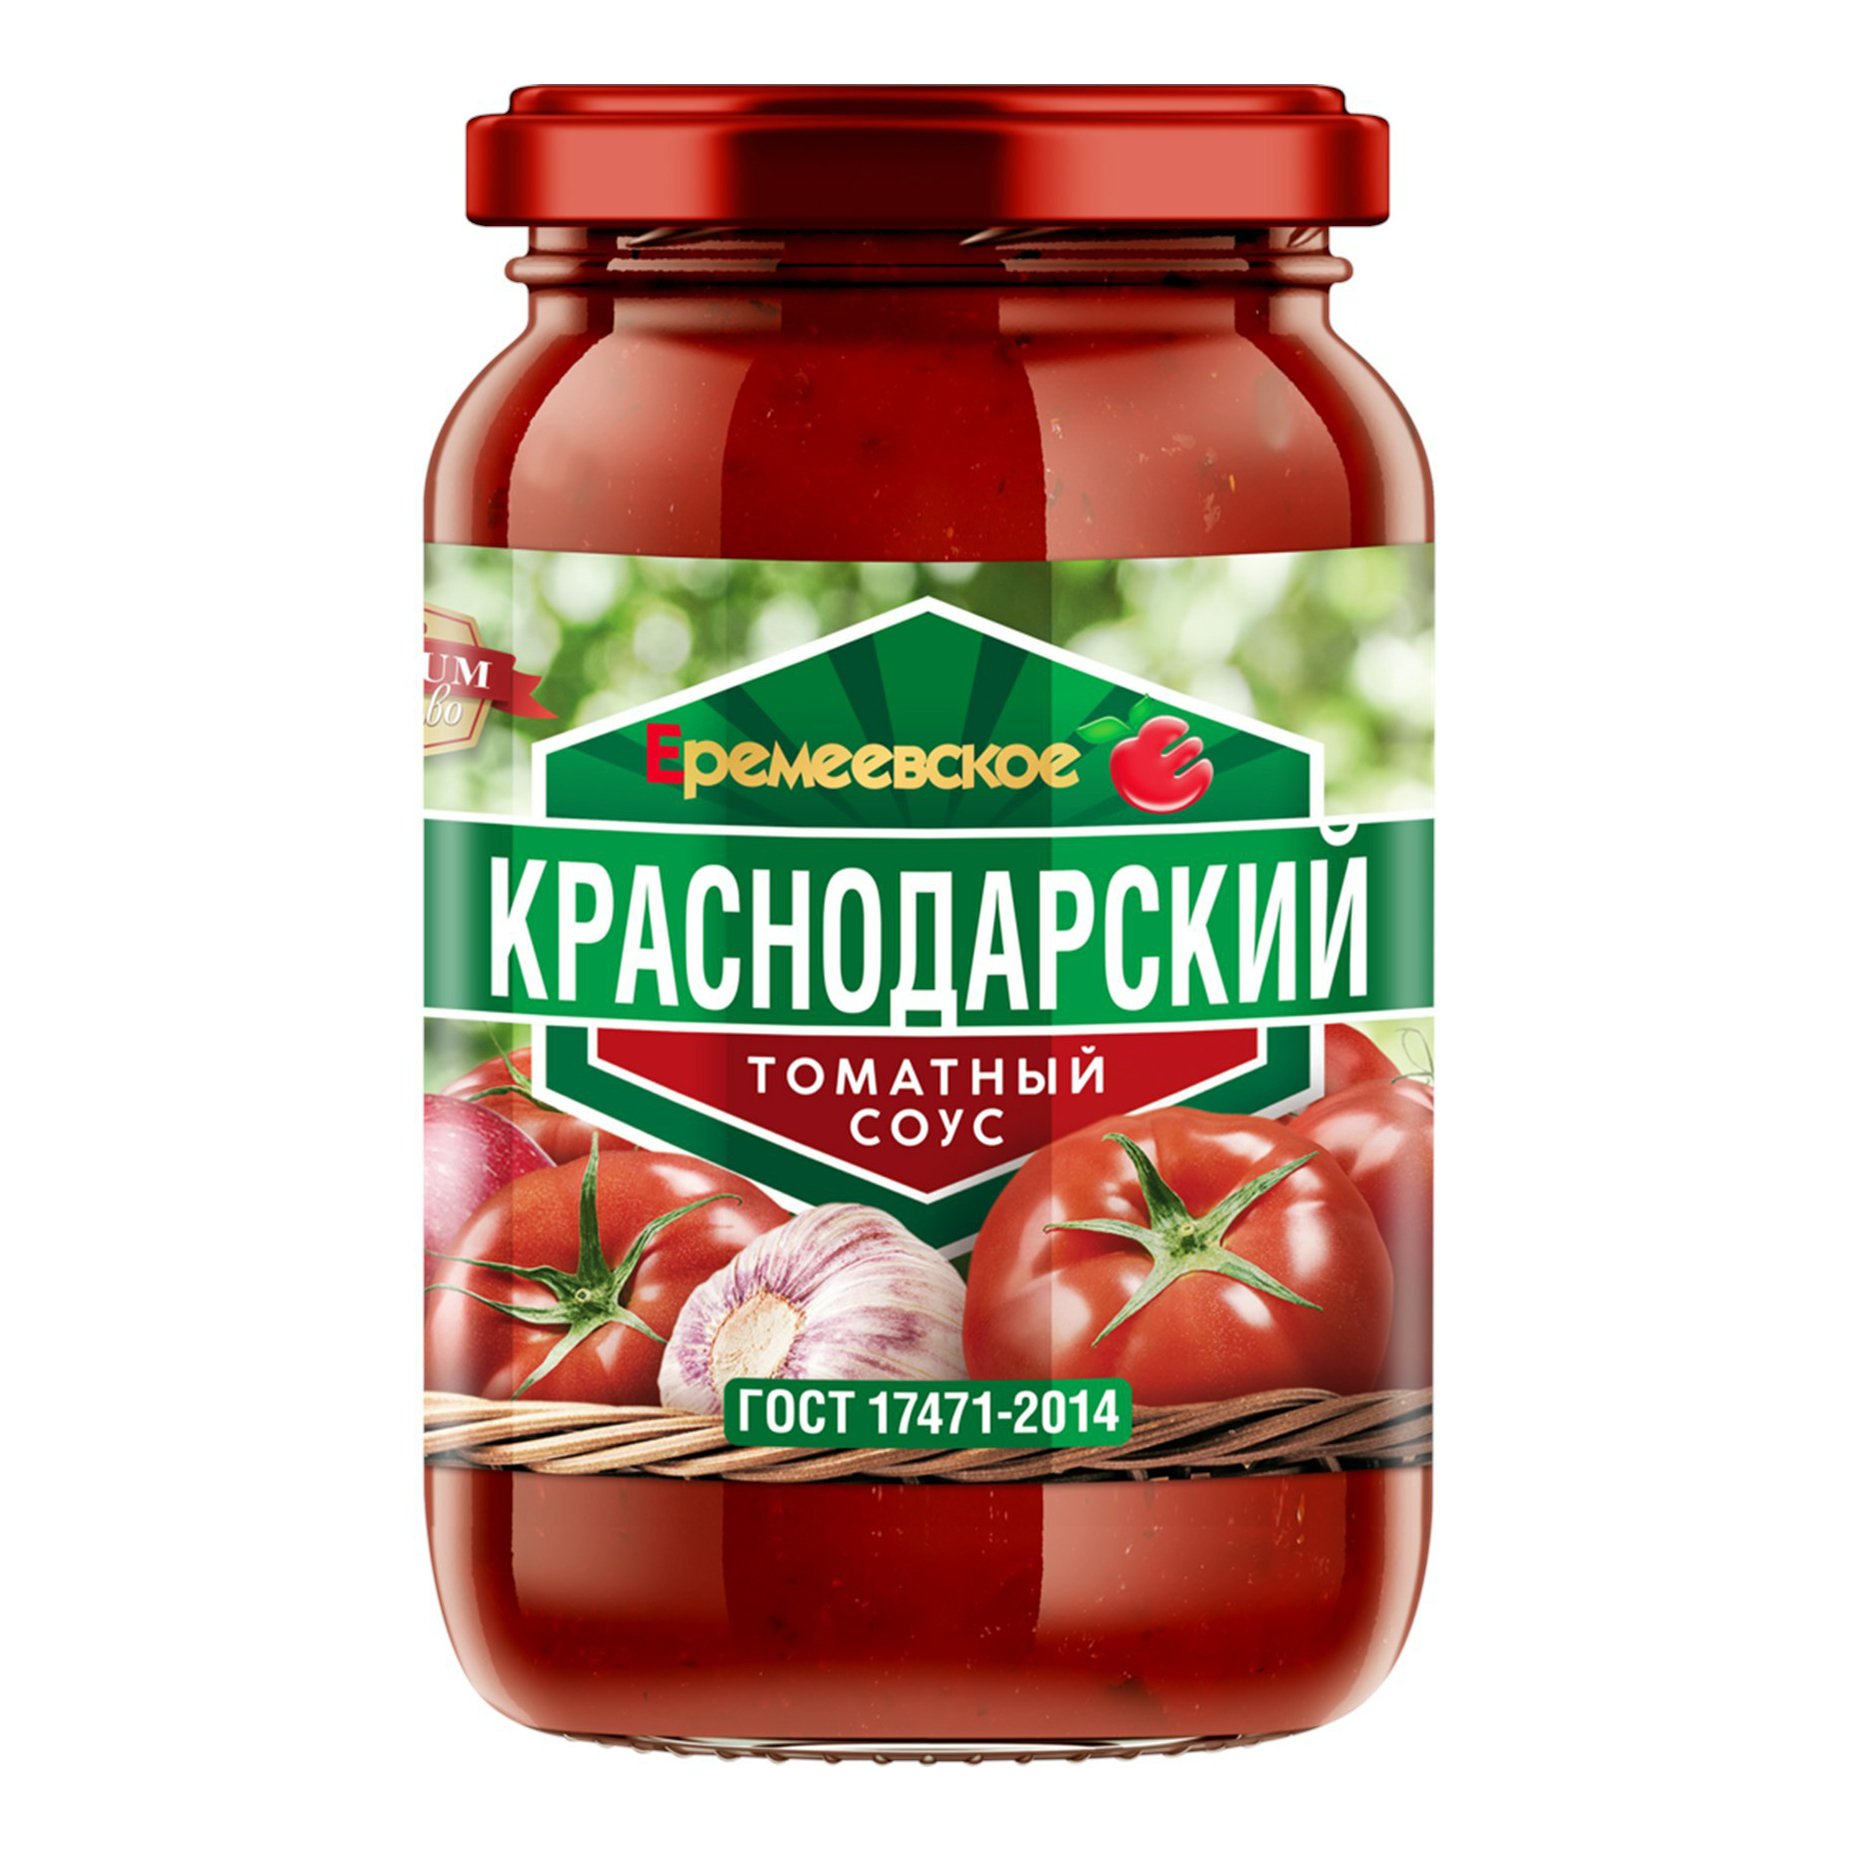 Соус Еремеевское Краснодарский томатный 350 г